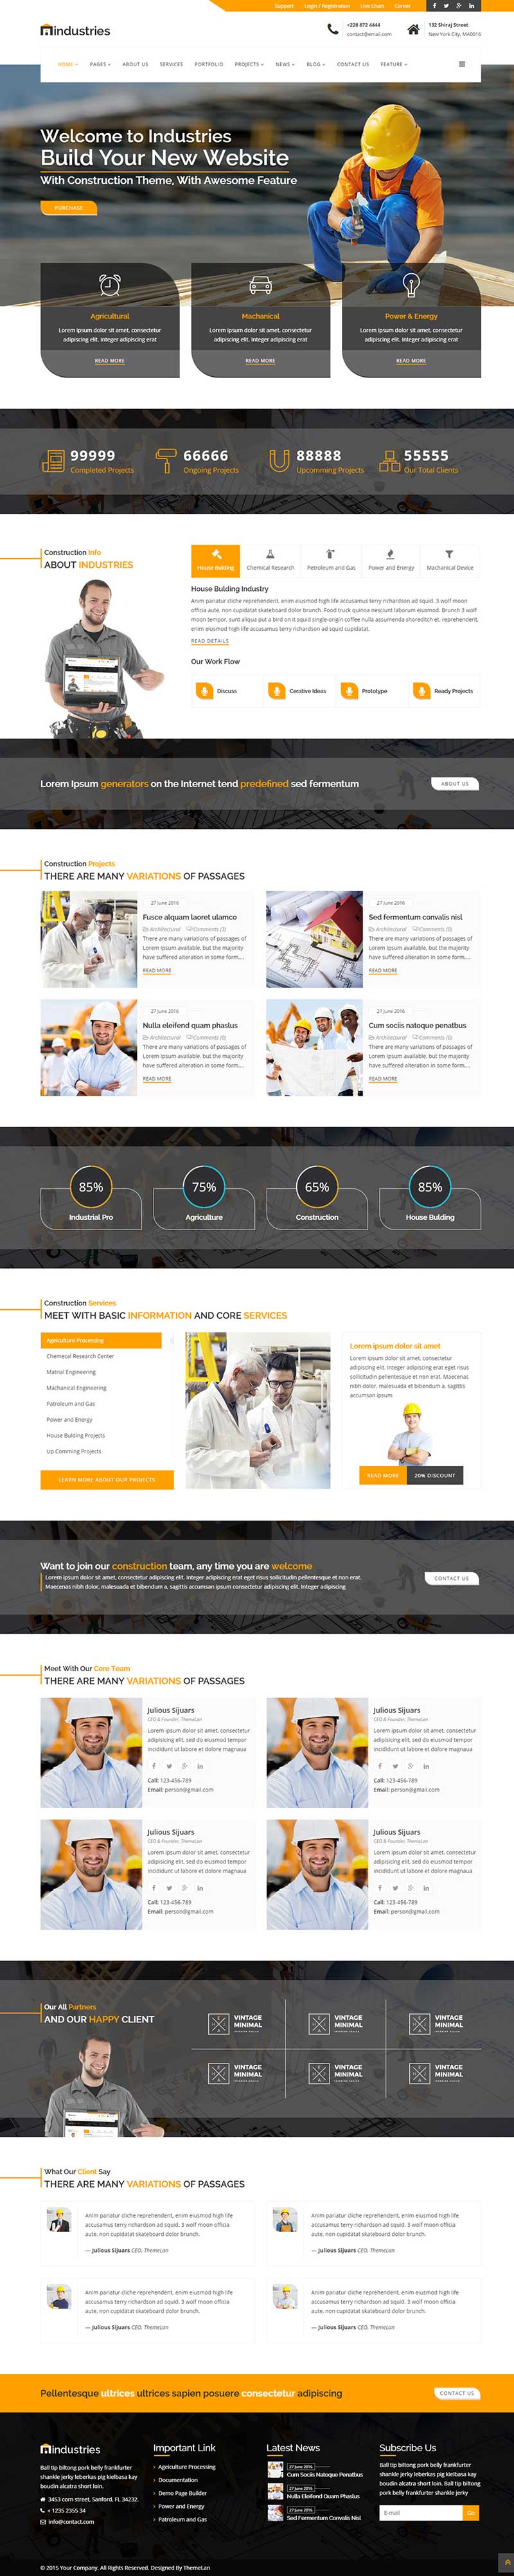 橙色宽屏的建筑工业行业网站模板